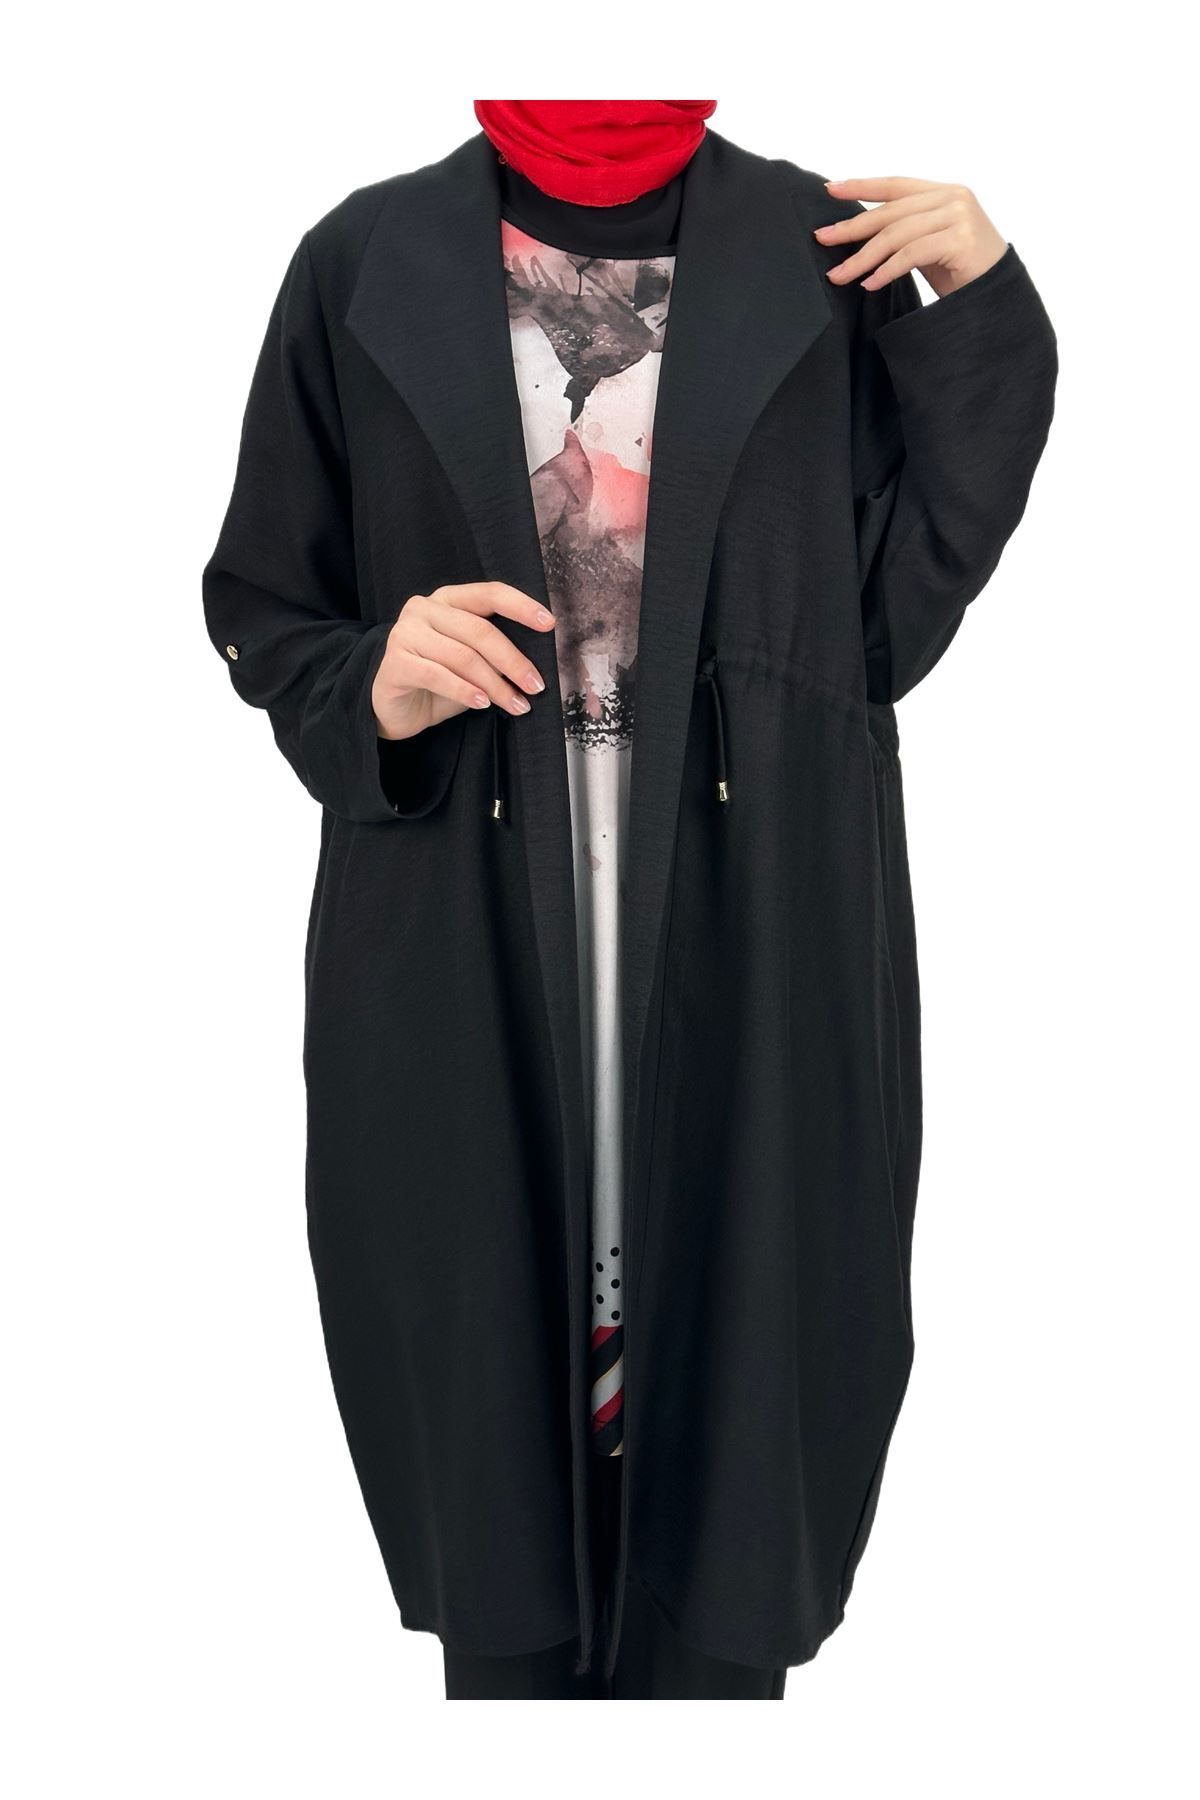 ottoman wear OTW60203 Büyük Beden Ceket İçlik Takım Siyah